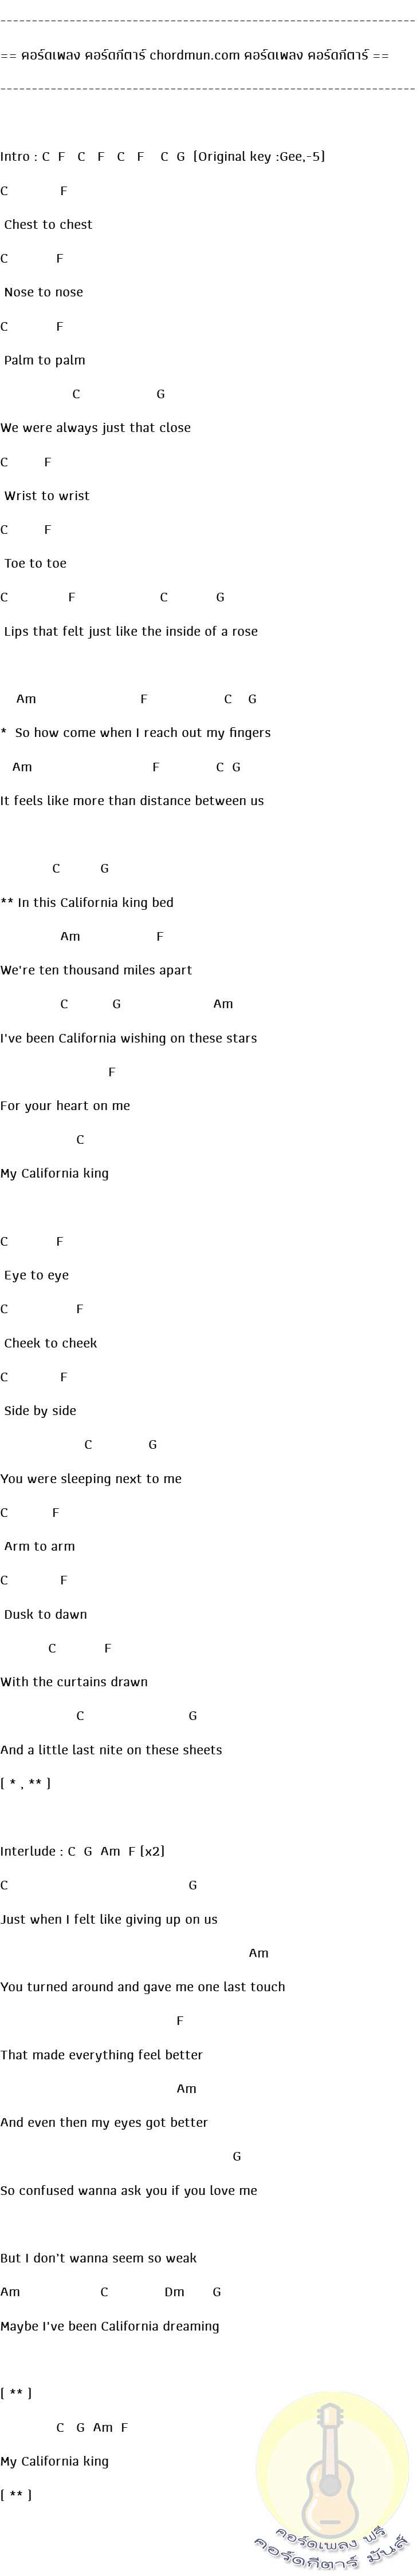 คอร์ดกีตาร์พื้นฐาน  เพลง California king bed